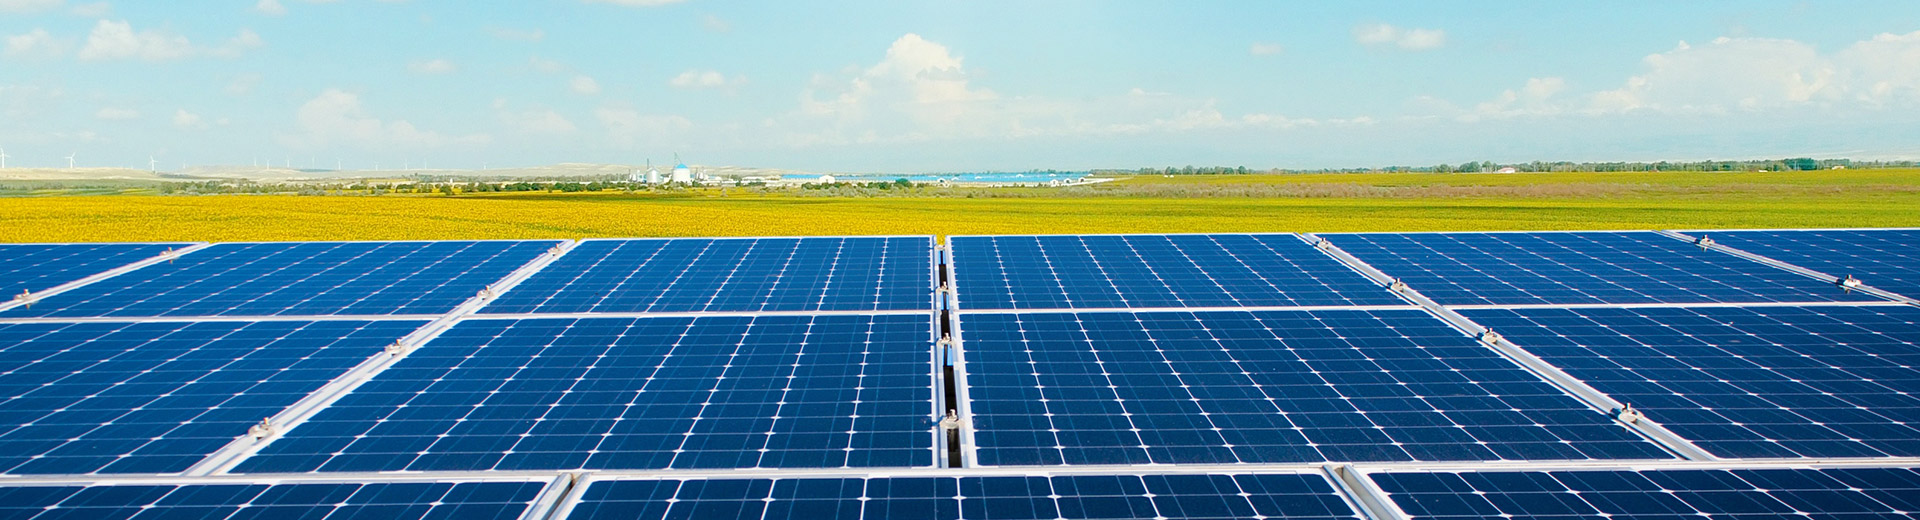 آمری سولار آرانیرو - هزینه و طرح توجیهی نیروگاه خورشیدی